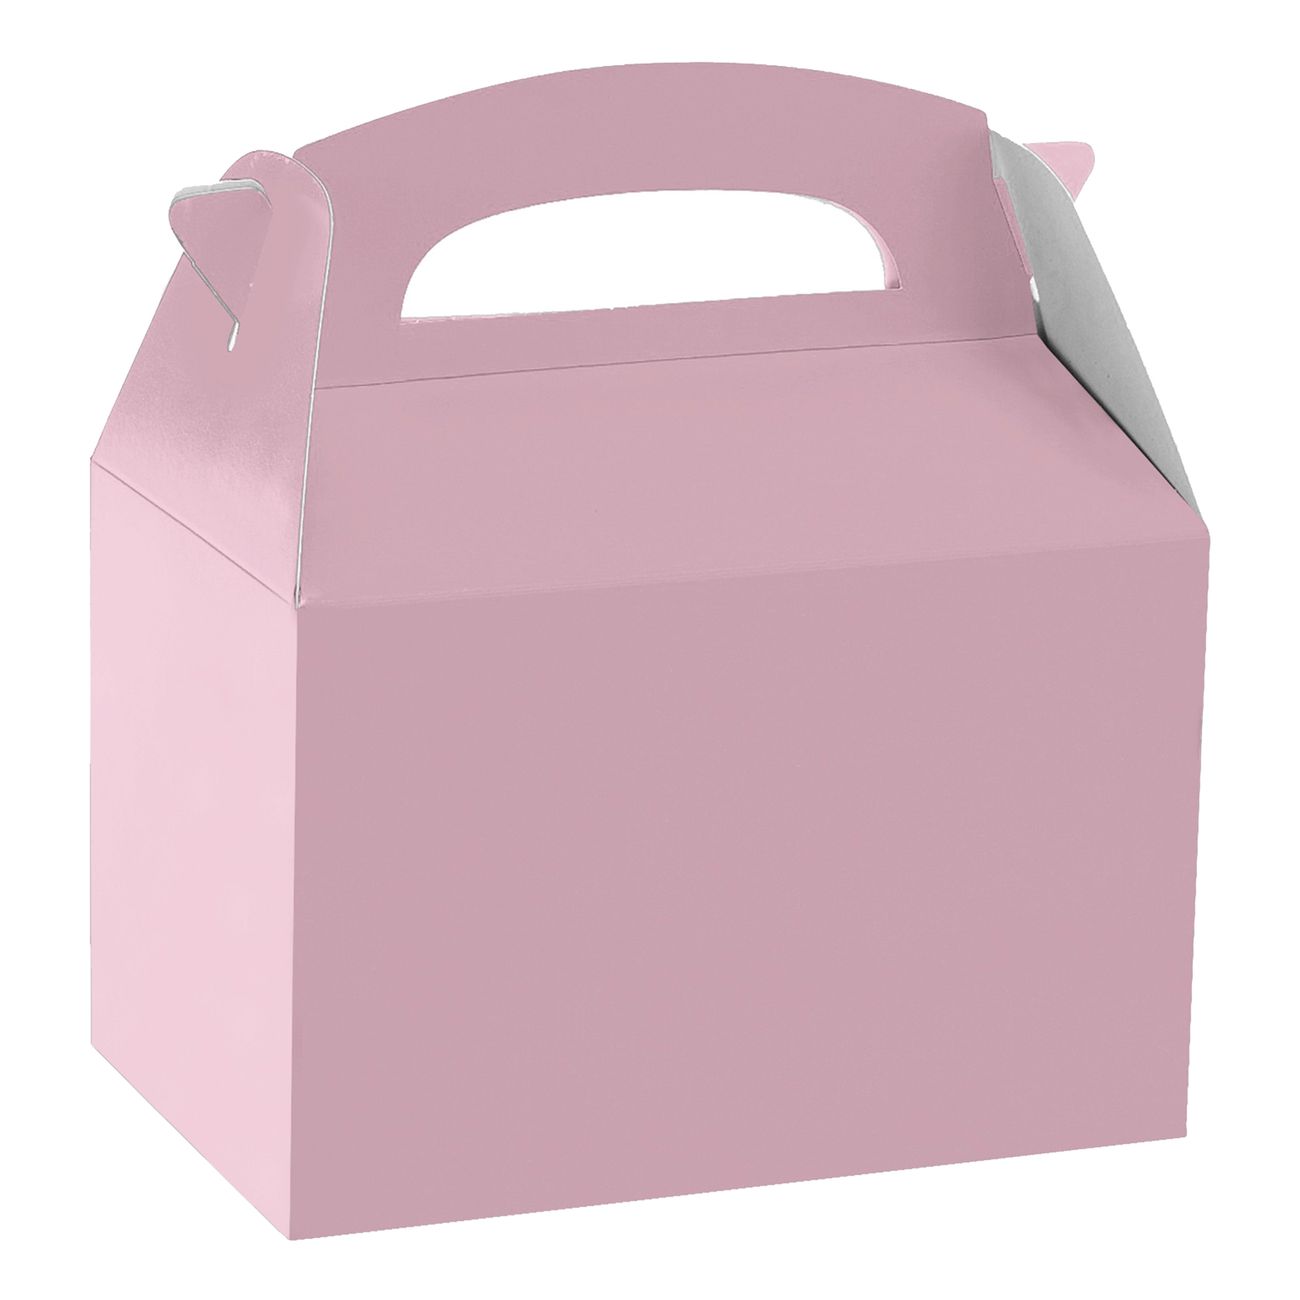 kalasbox-i-papp-rosa-97305-1